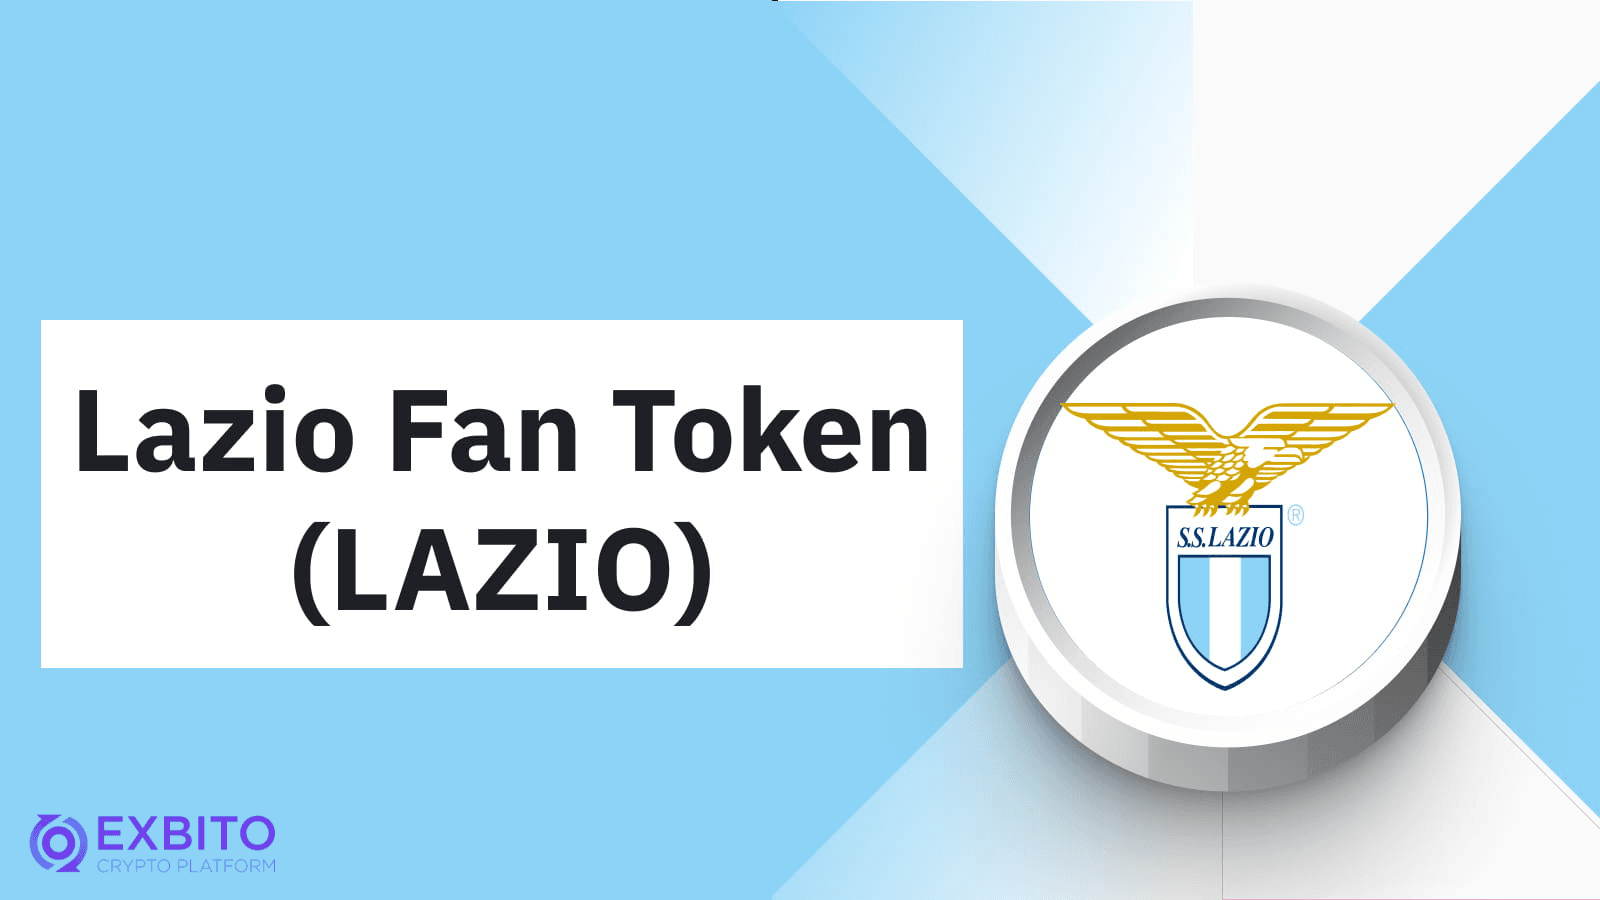 اتزیو فن توکن (SS Lazio Fan Token) چیست؟